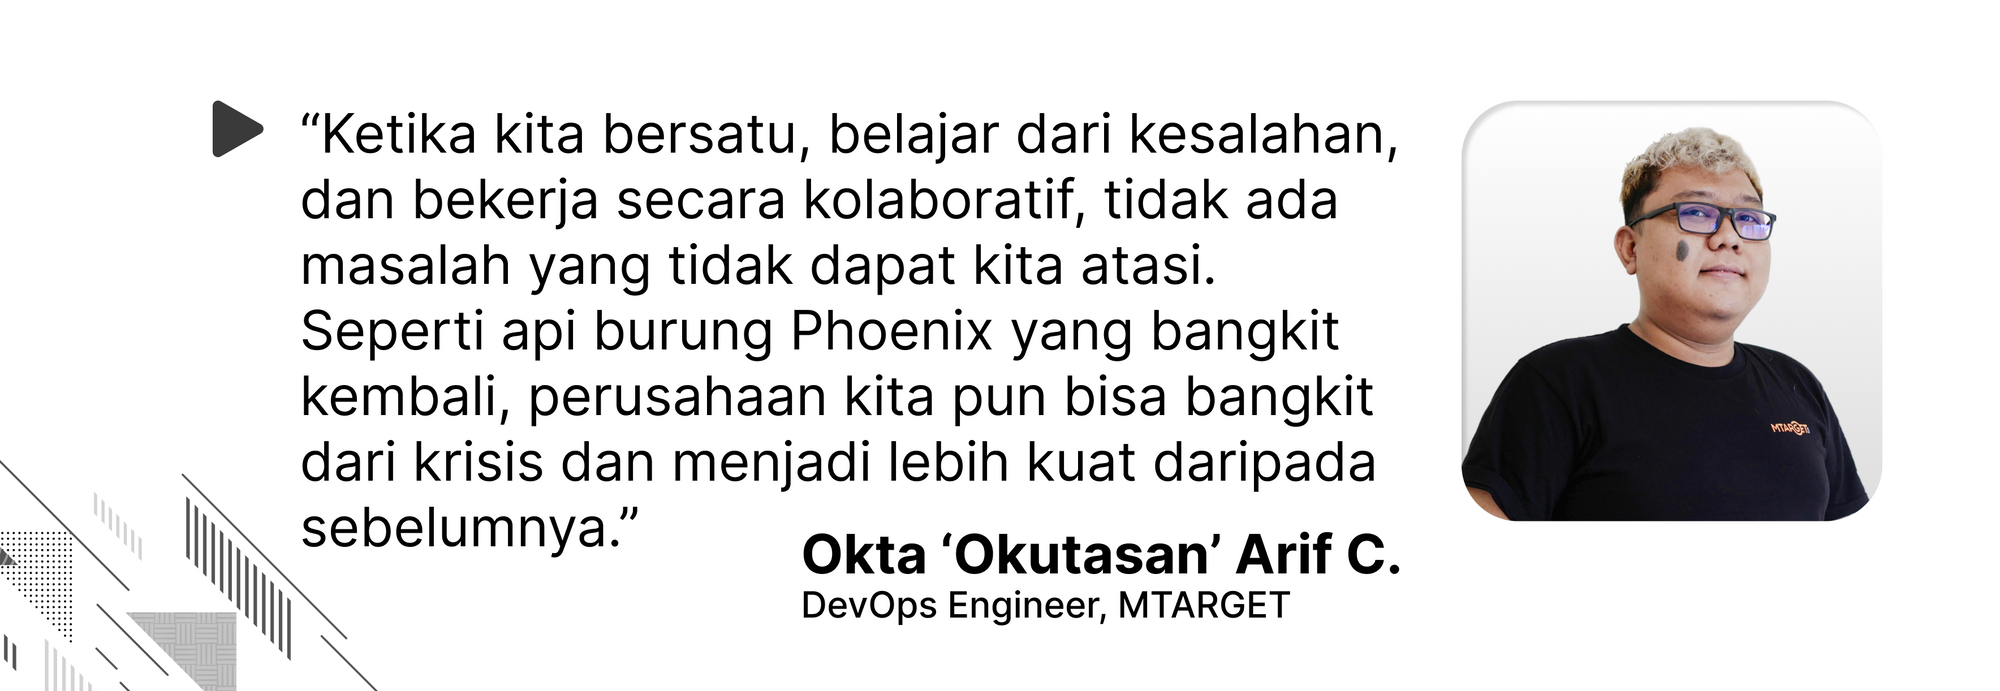 Quote oleh Okta Arif C. mengenai mengatasi masalah dan bangkit dari krisis yang dipelajari dari burung Phoenix.